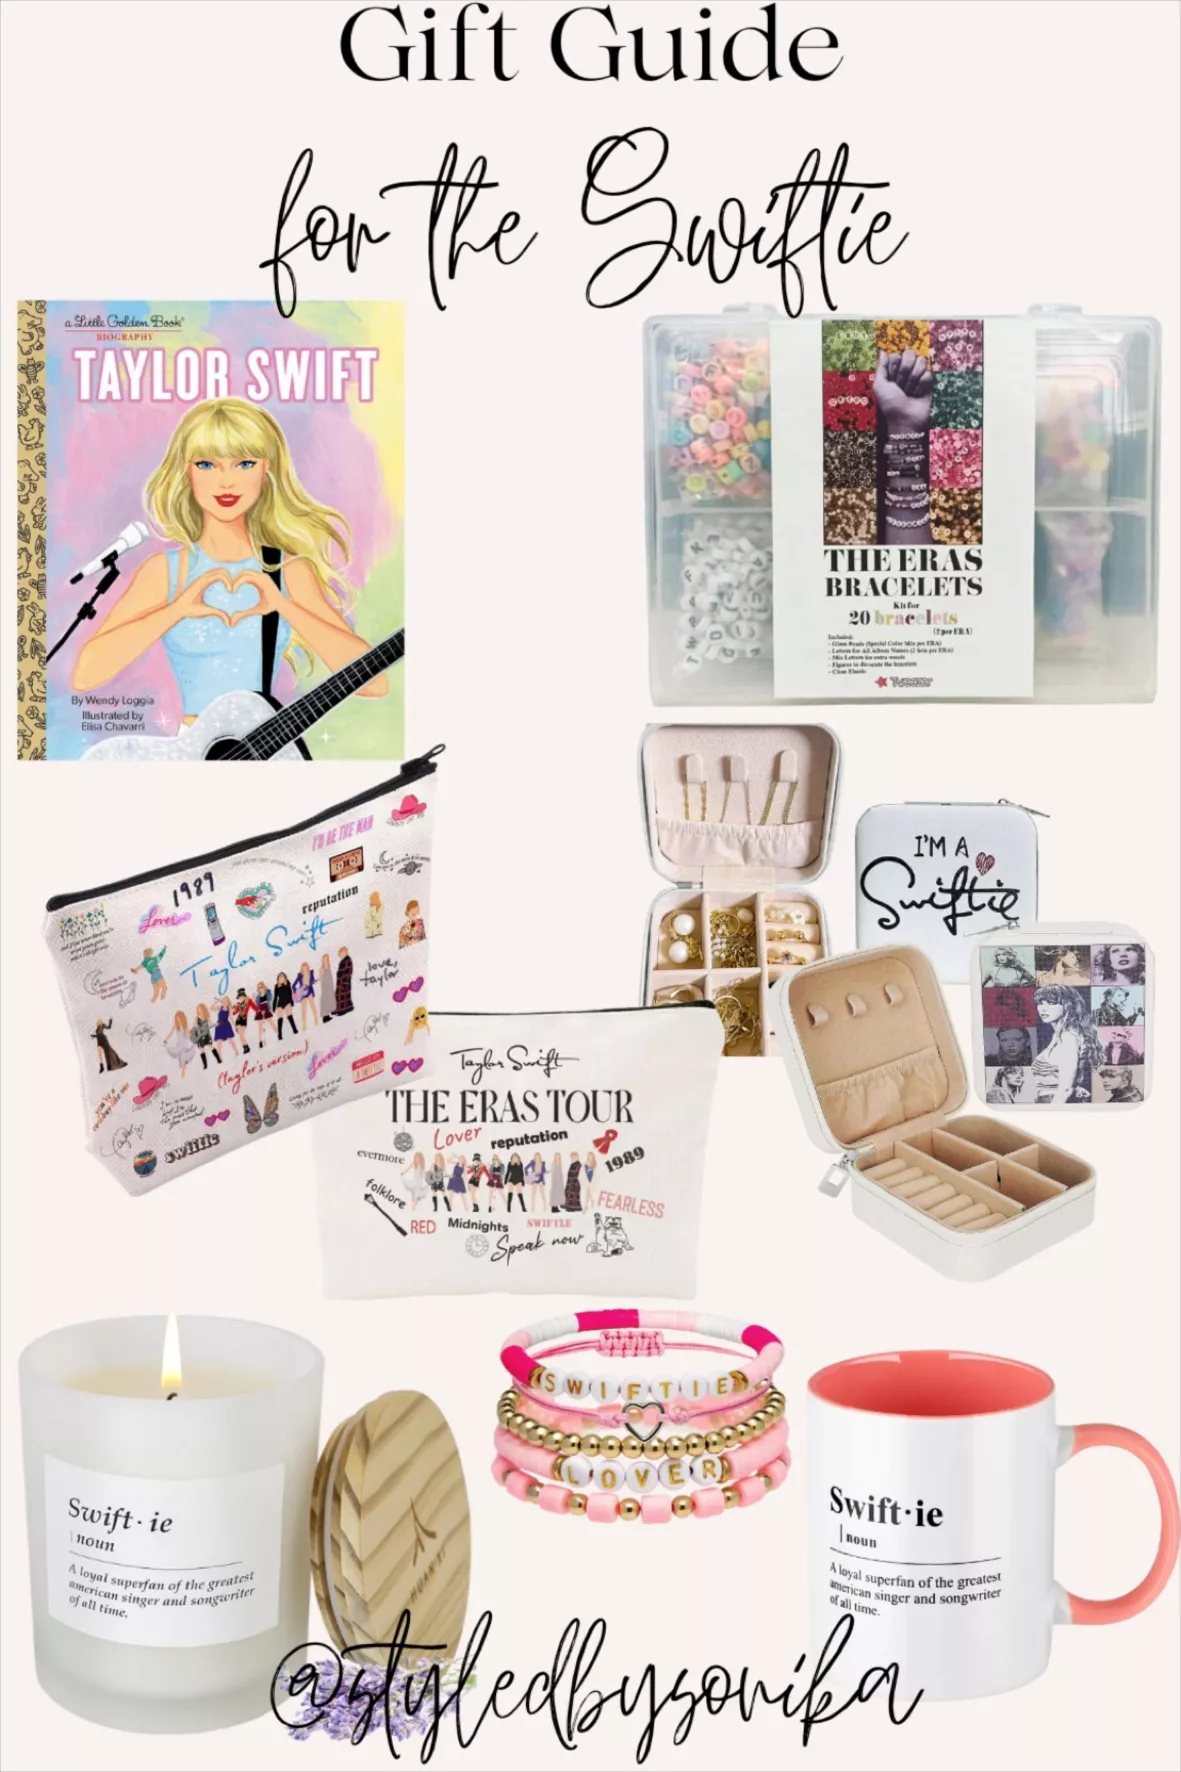 Swiftie - Taylor Swift Fans | Sticker